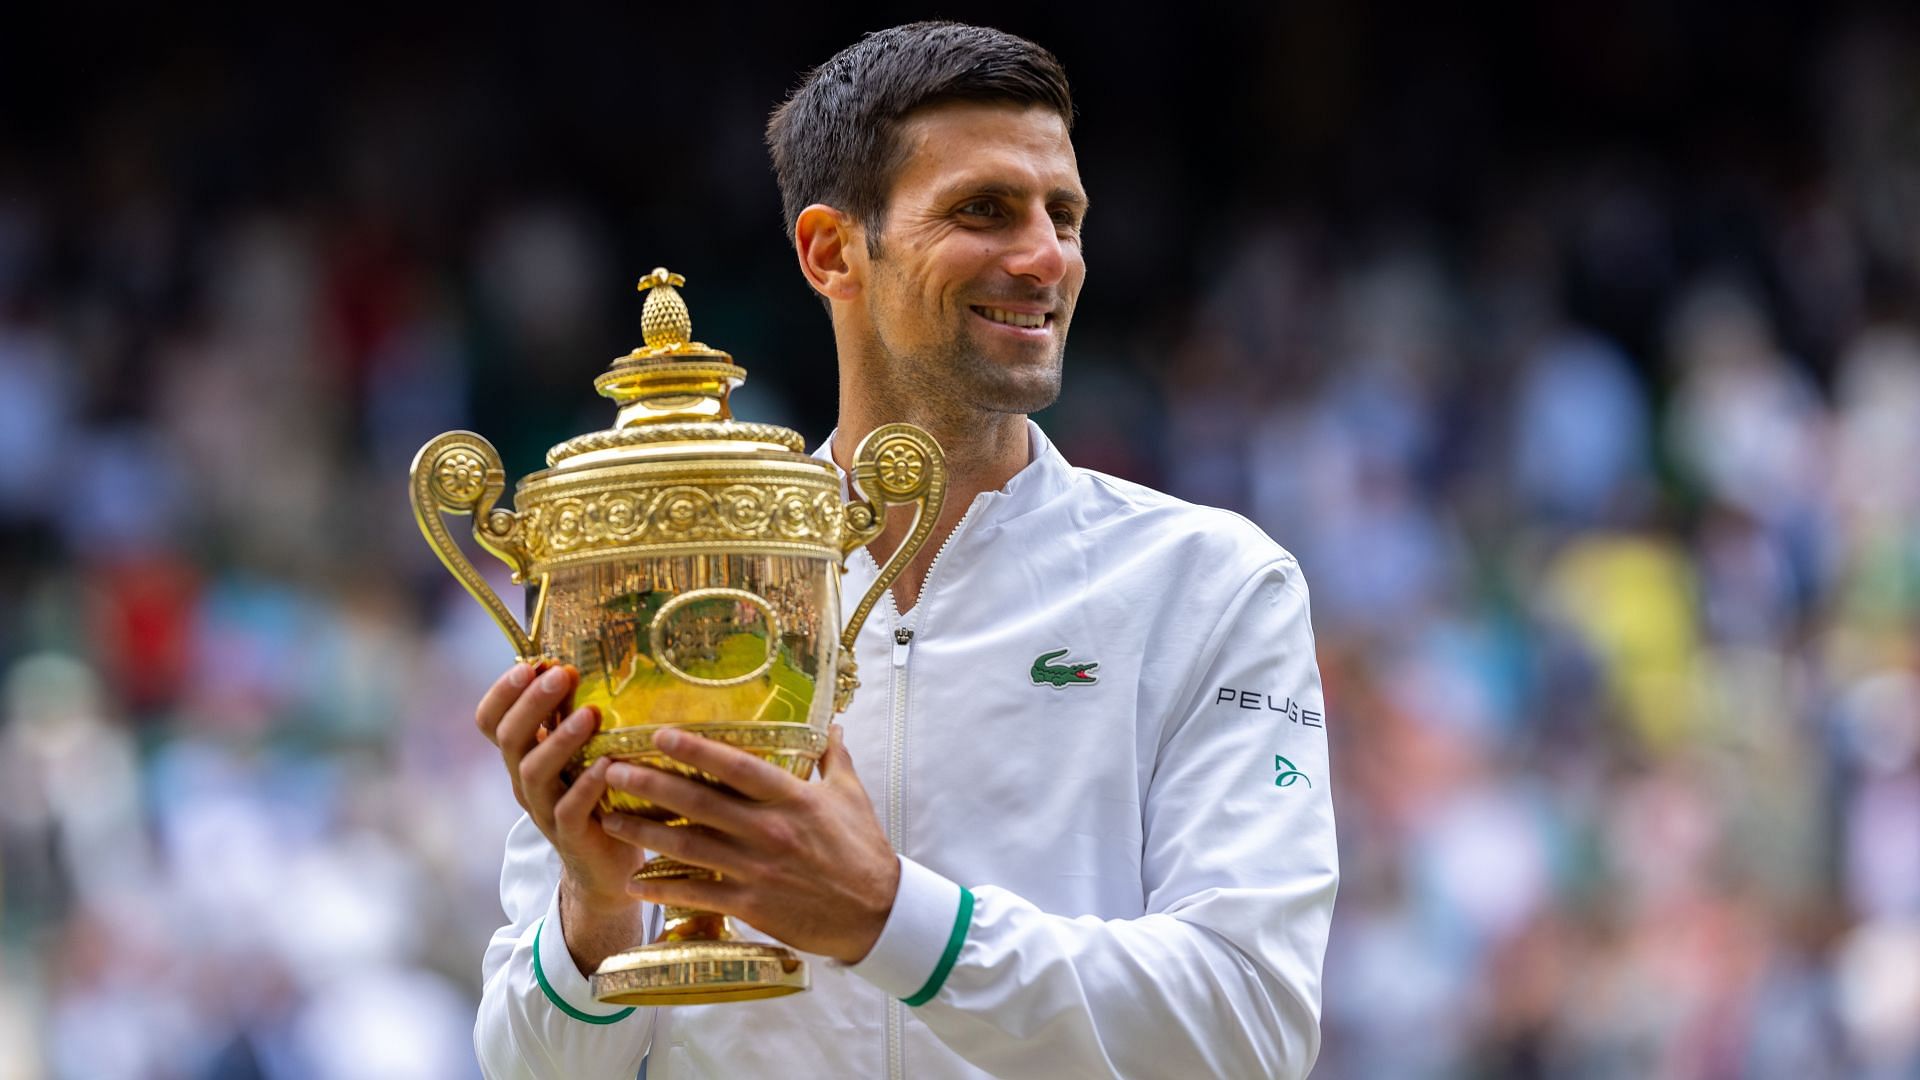 Novak Djokovic poses with the 2021 Wimbledon trophy.